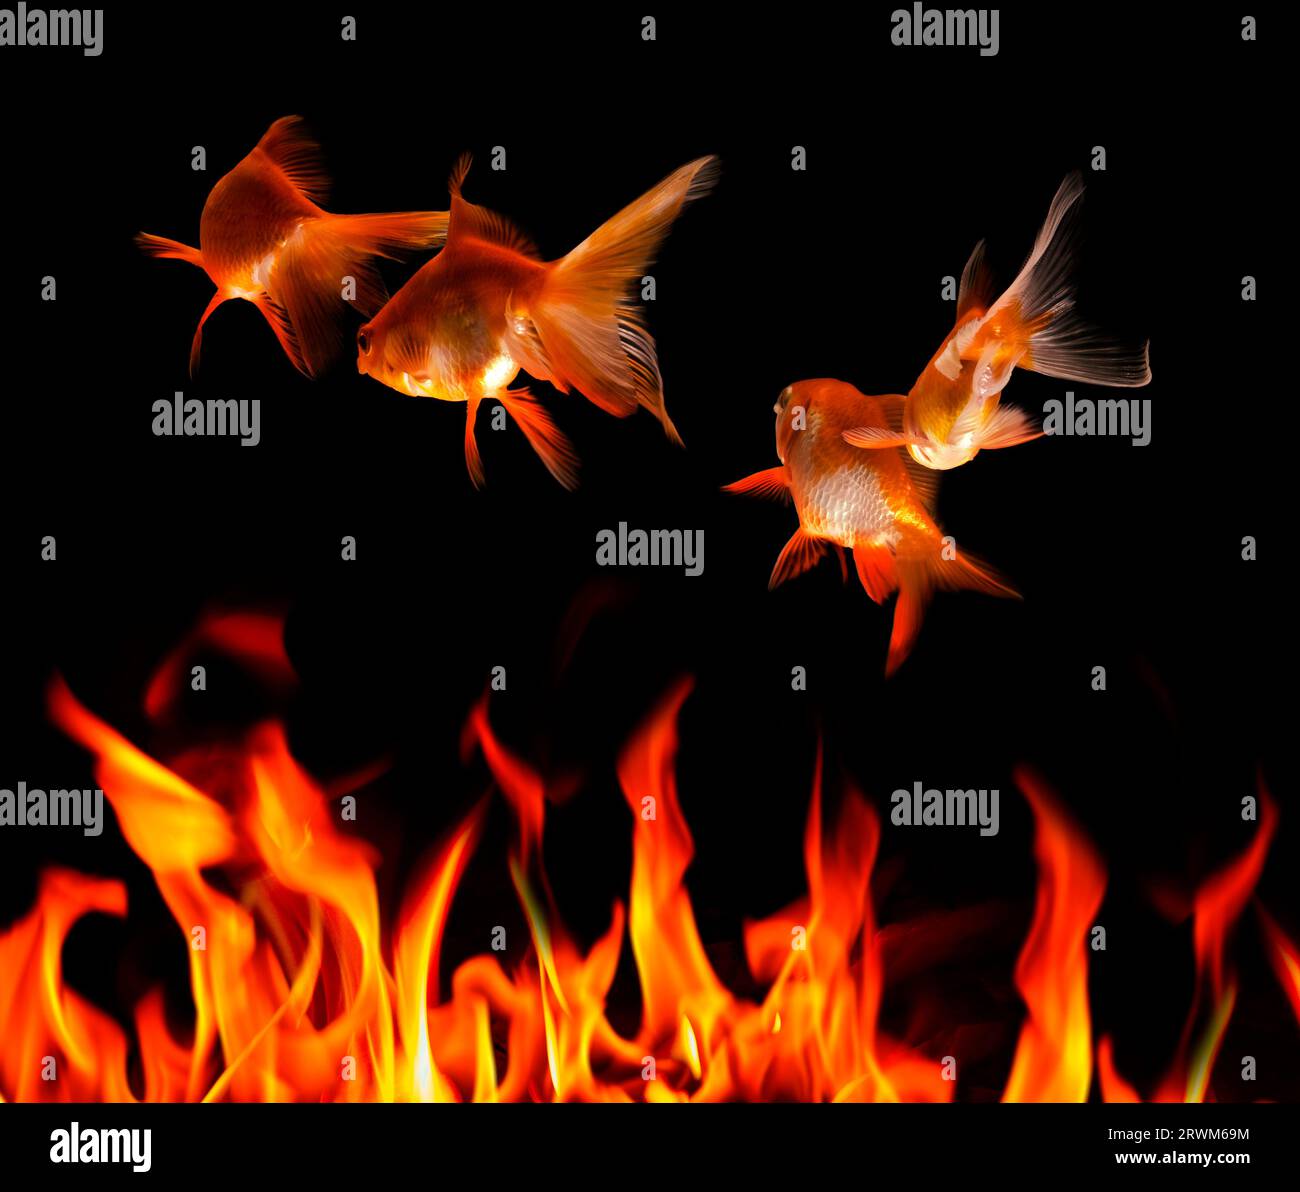 Image CGI de poissons rouges et de flammes représentant une menace environnementale Banque D'Images